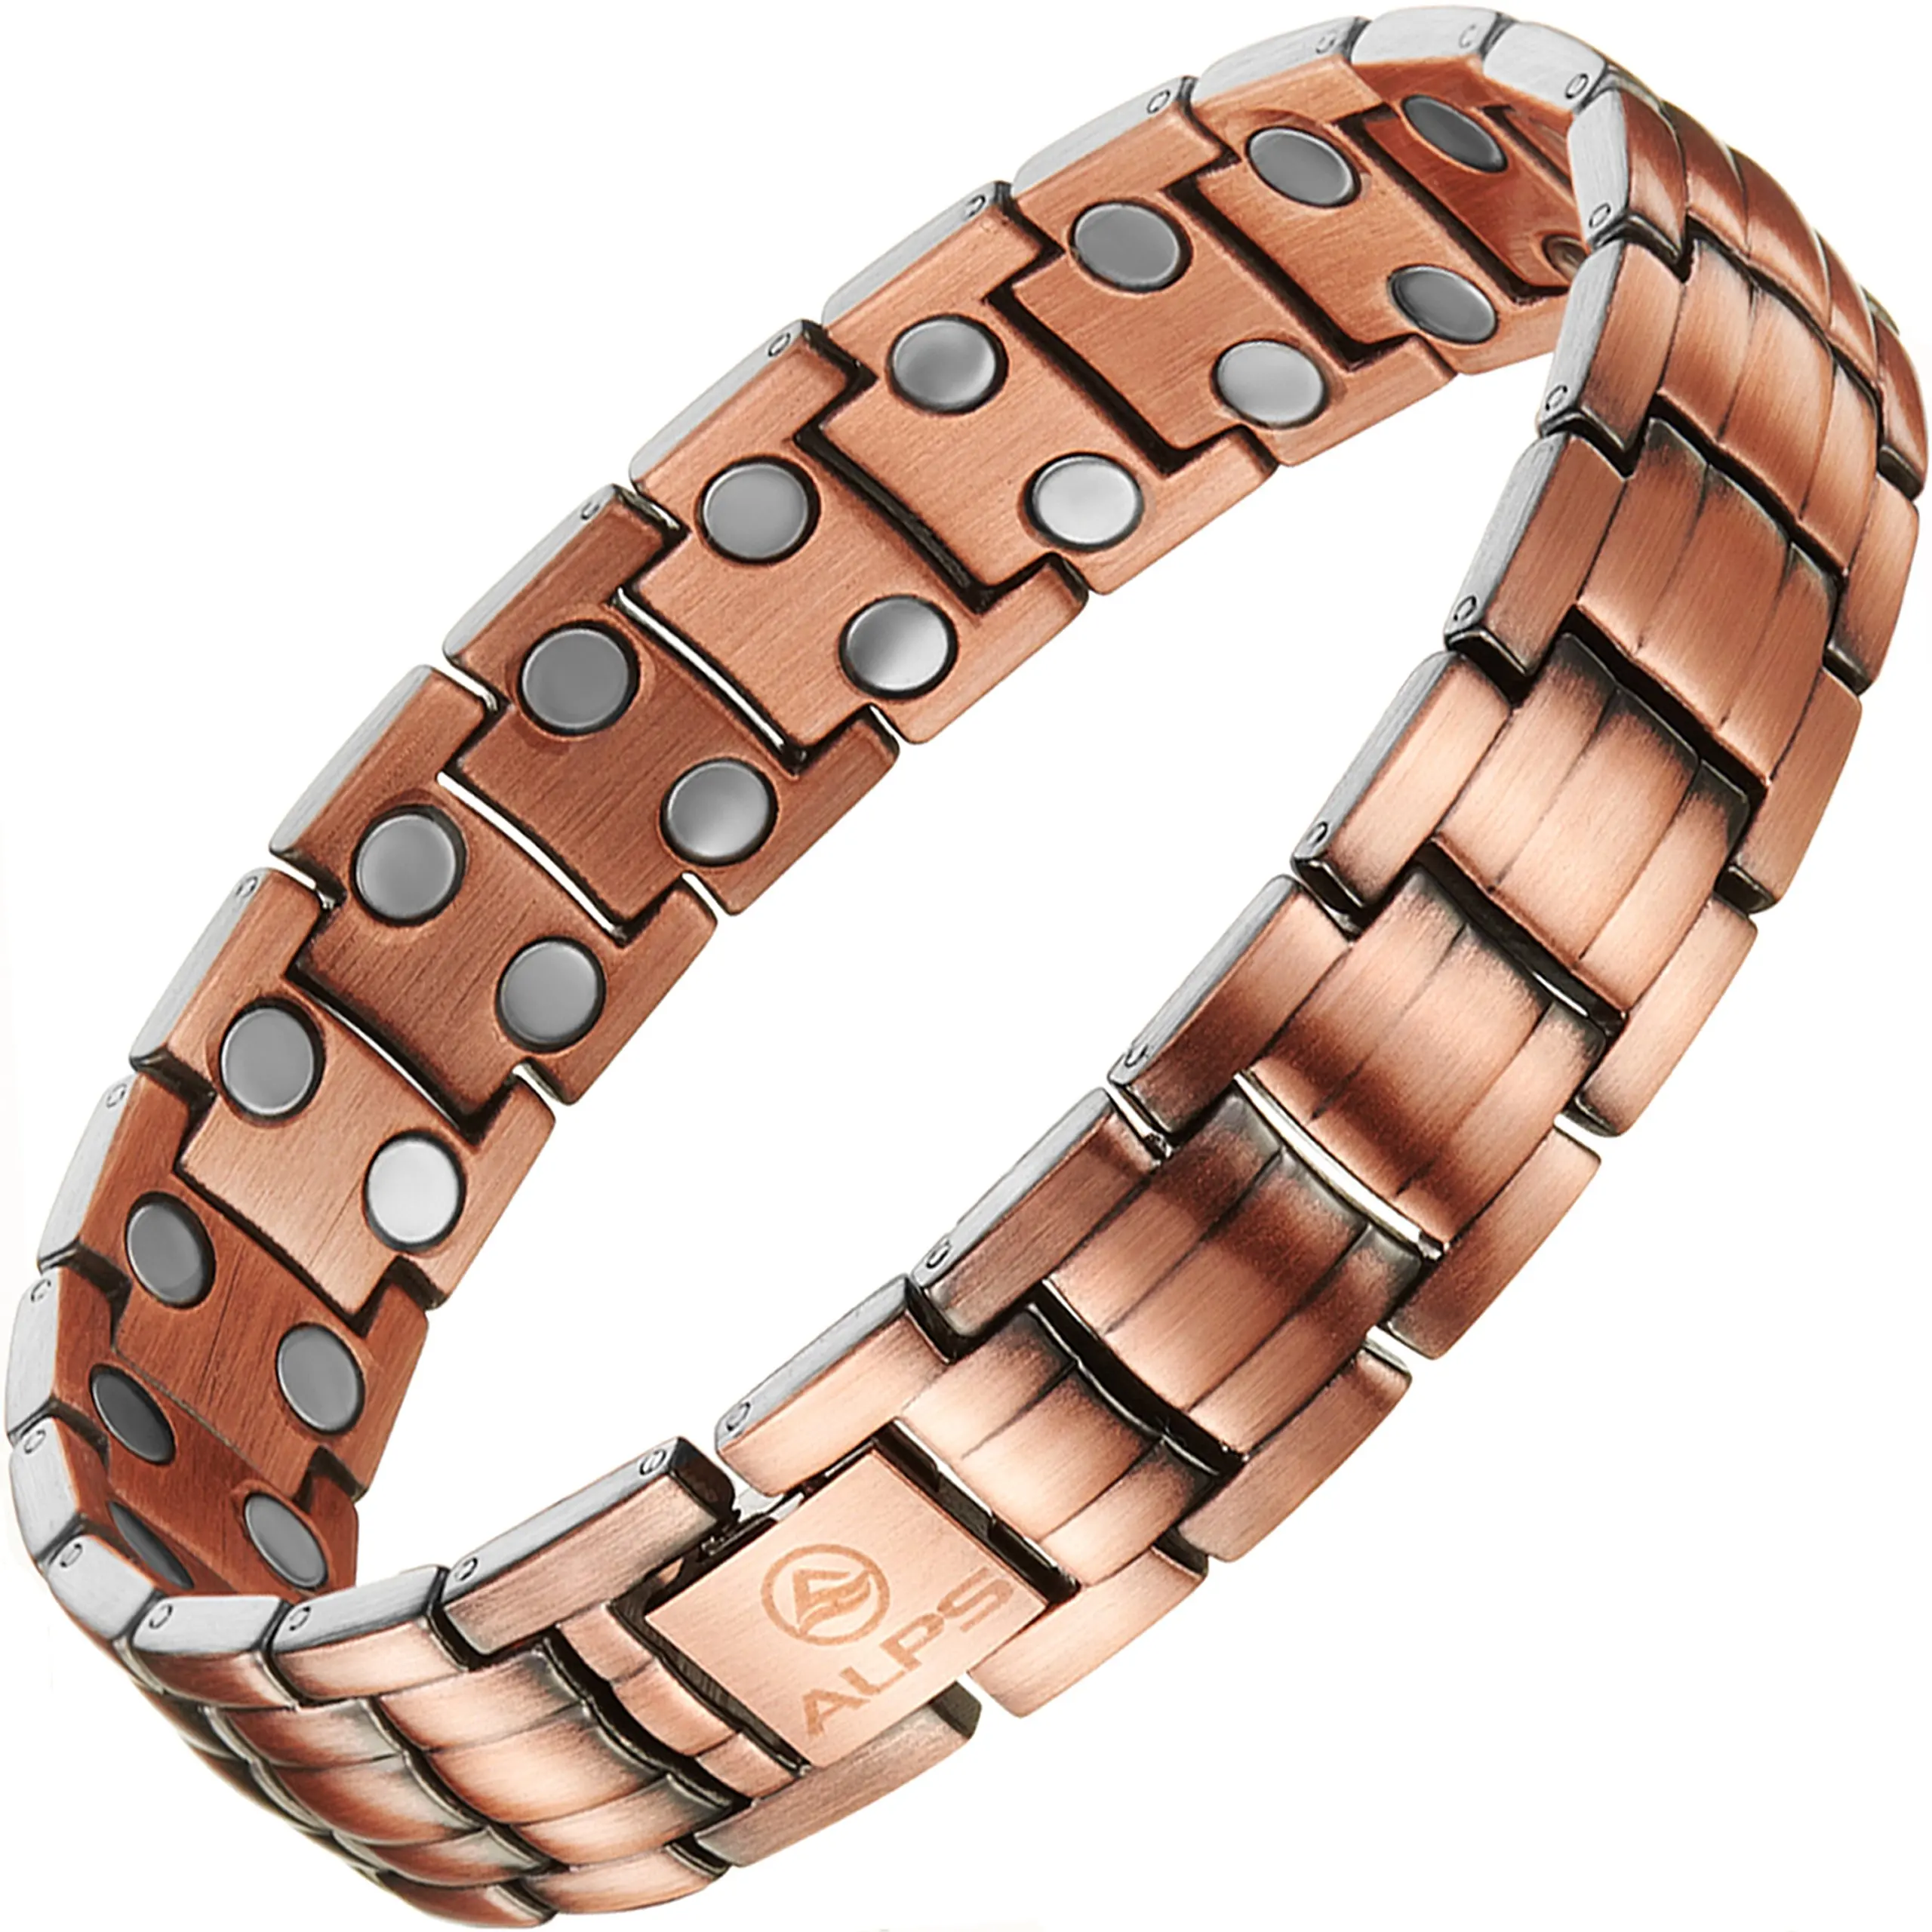 Cheap 100 Pure Copper Bracelet, find 100 Pure Copper Bracelet deals on ...